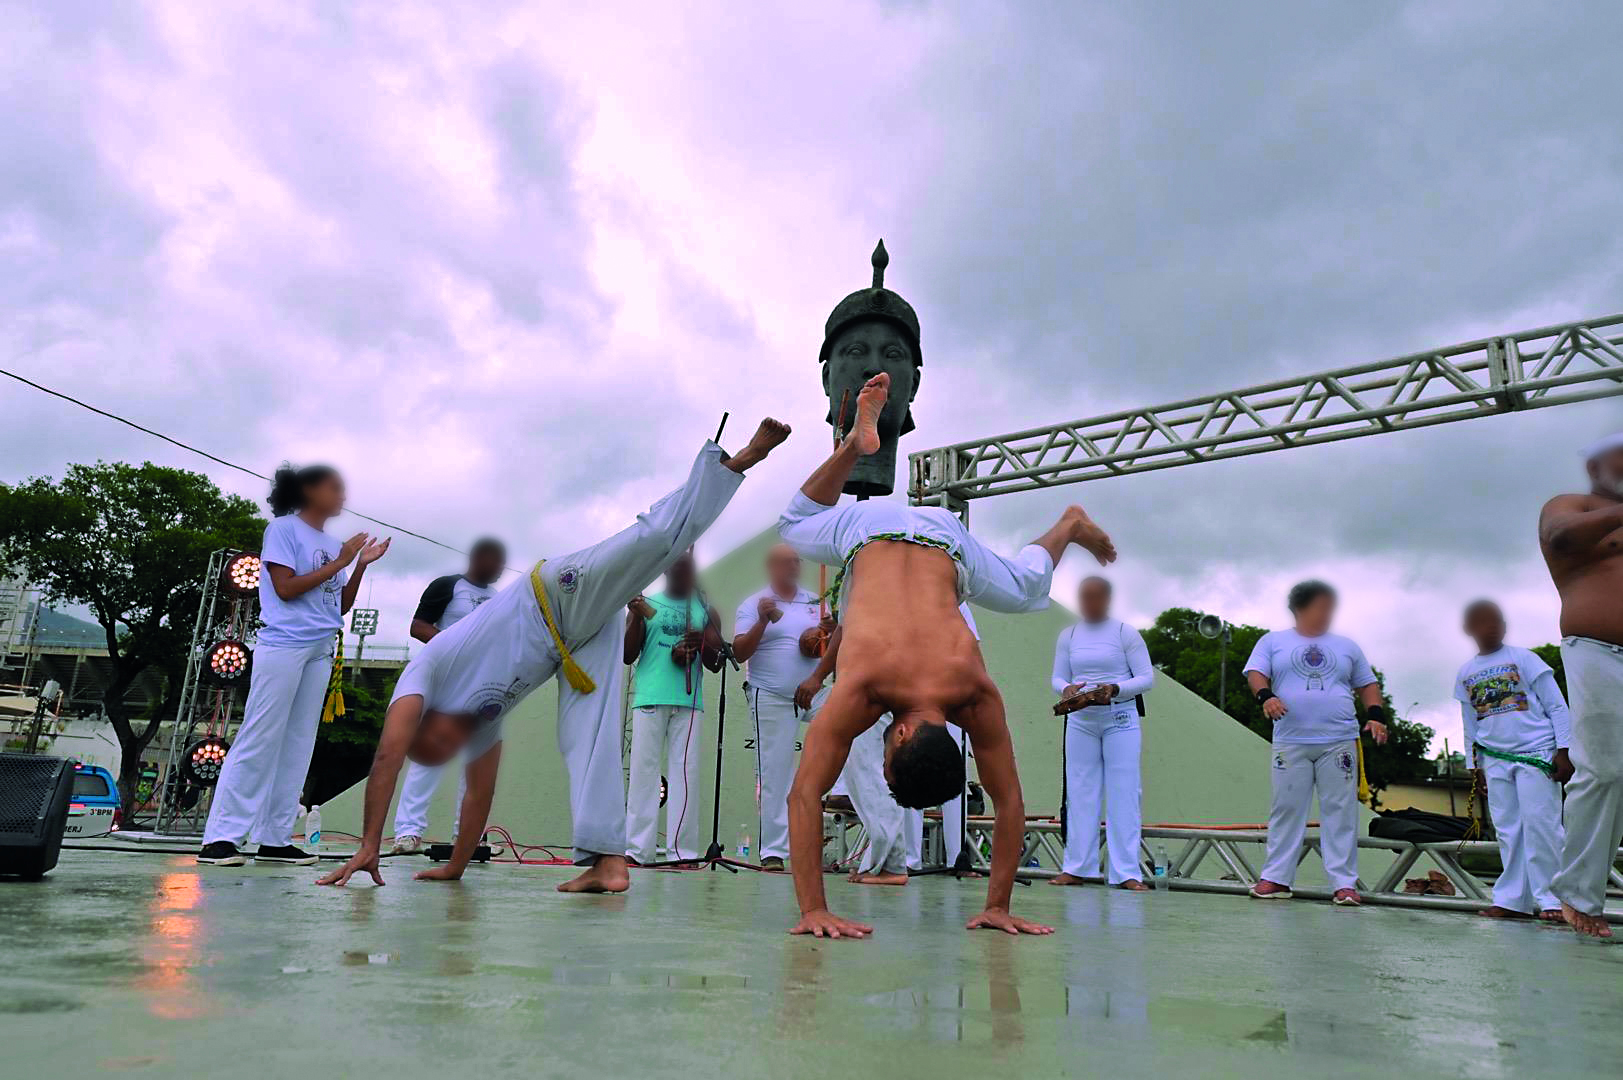 Fotografia. Grupo de pessoas jogando capoeira na frente de um monumento histórico.